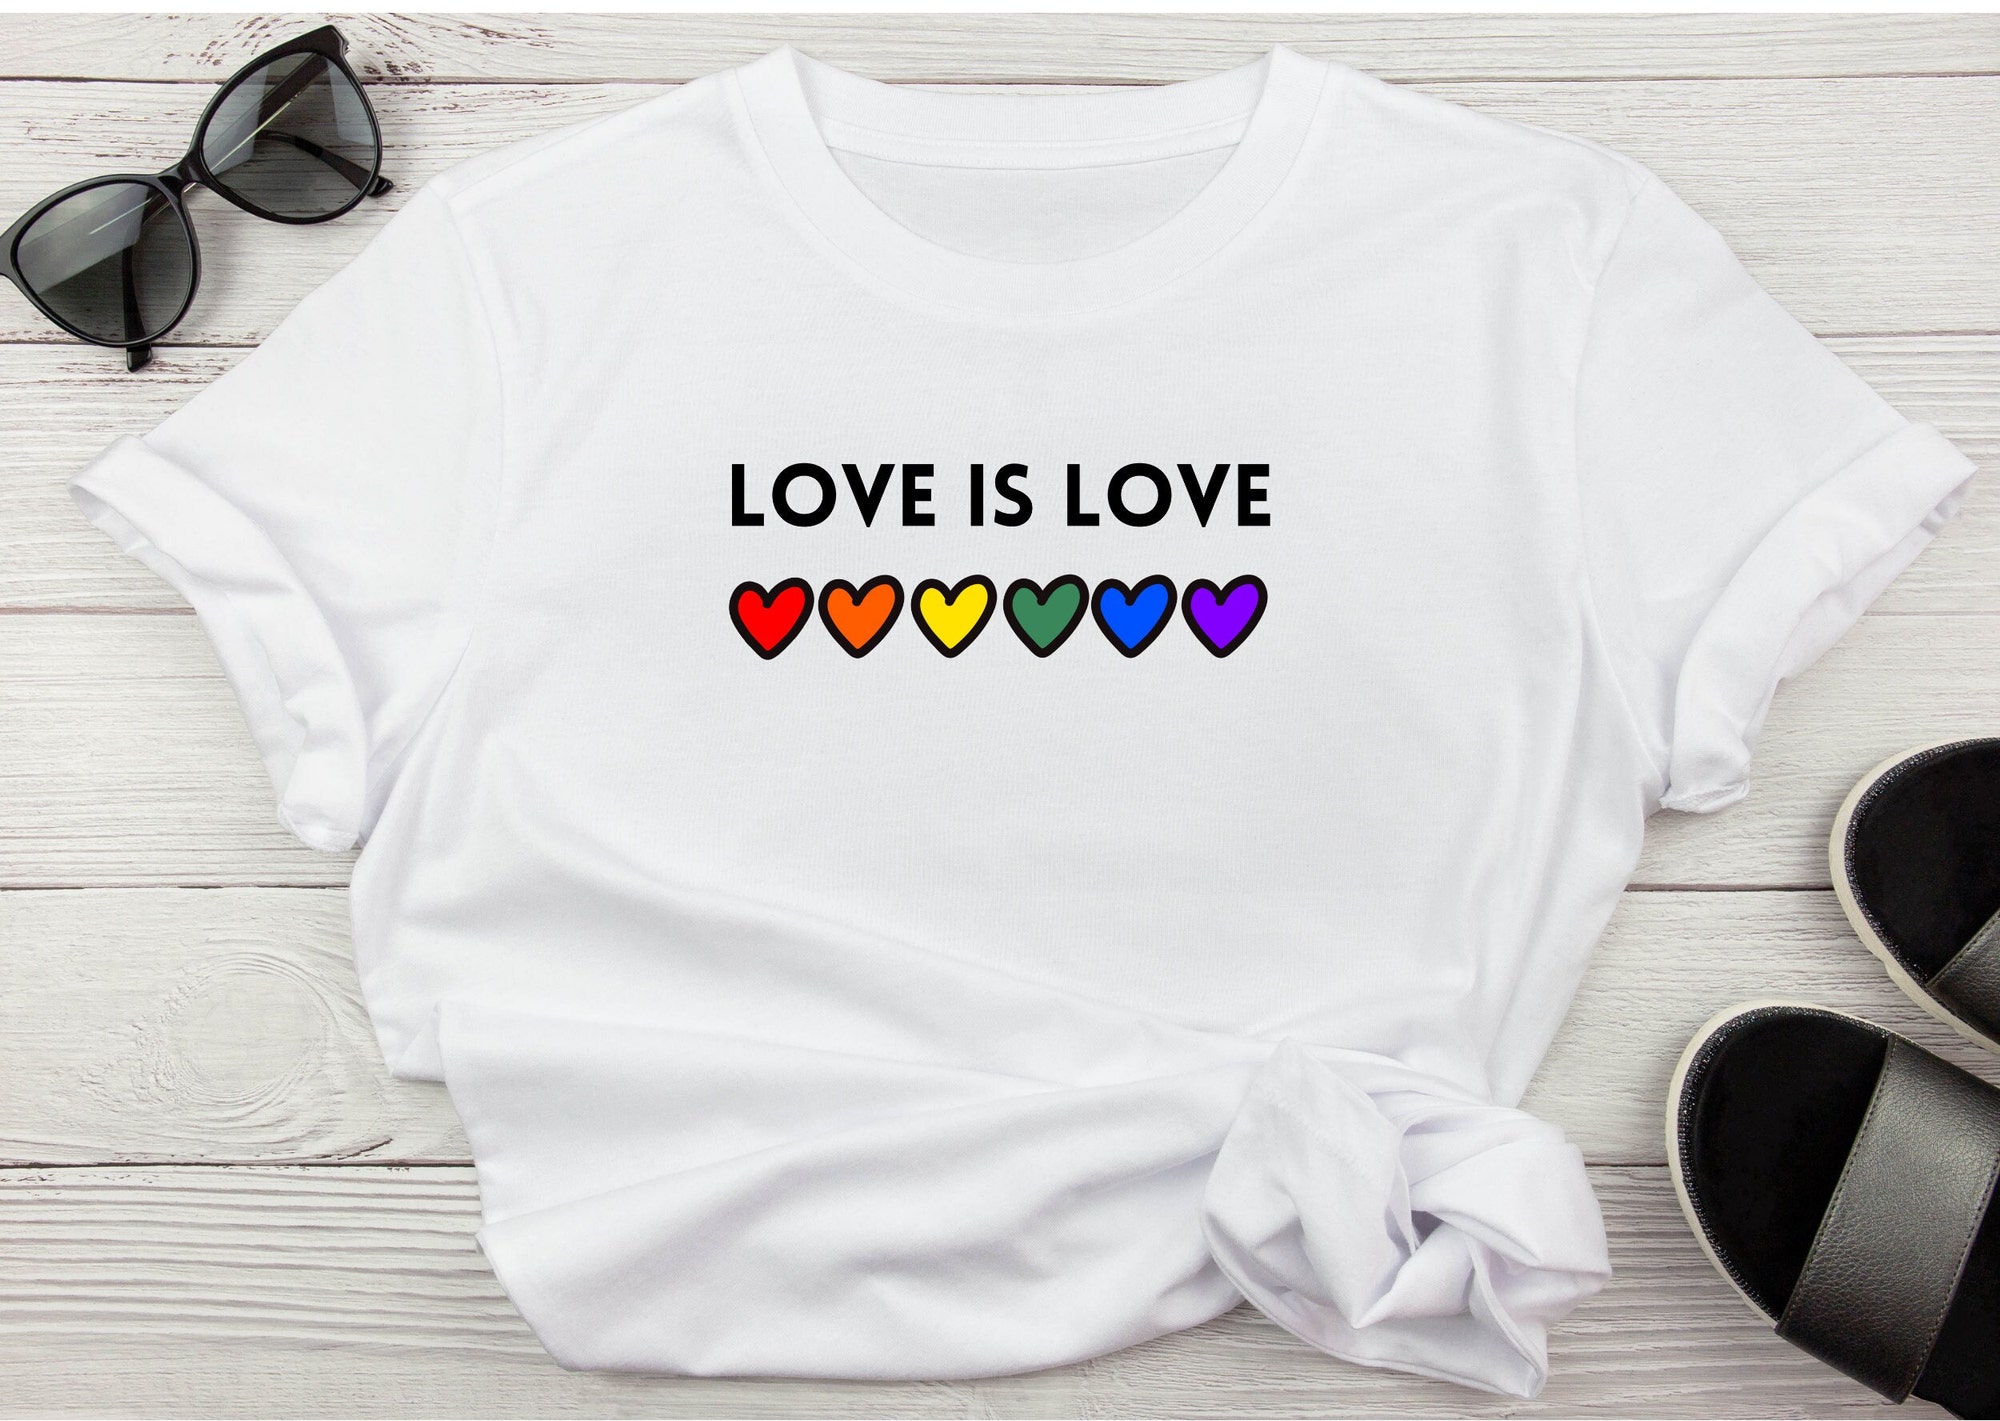 Discover Love is love Tshirt, pride Tshirt